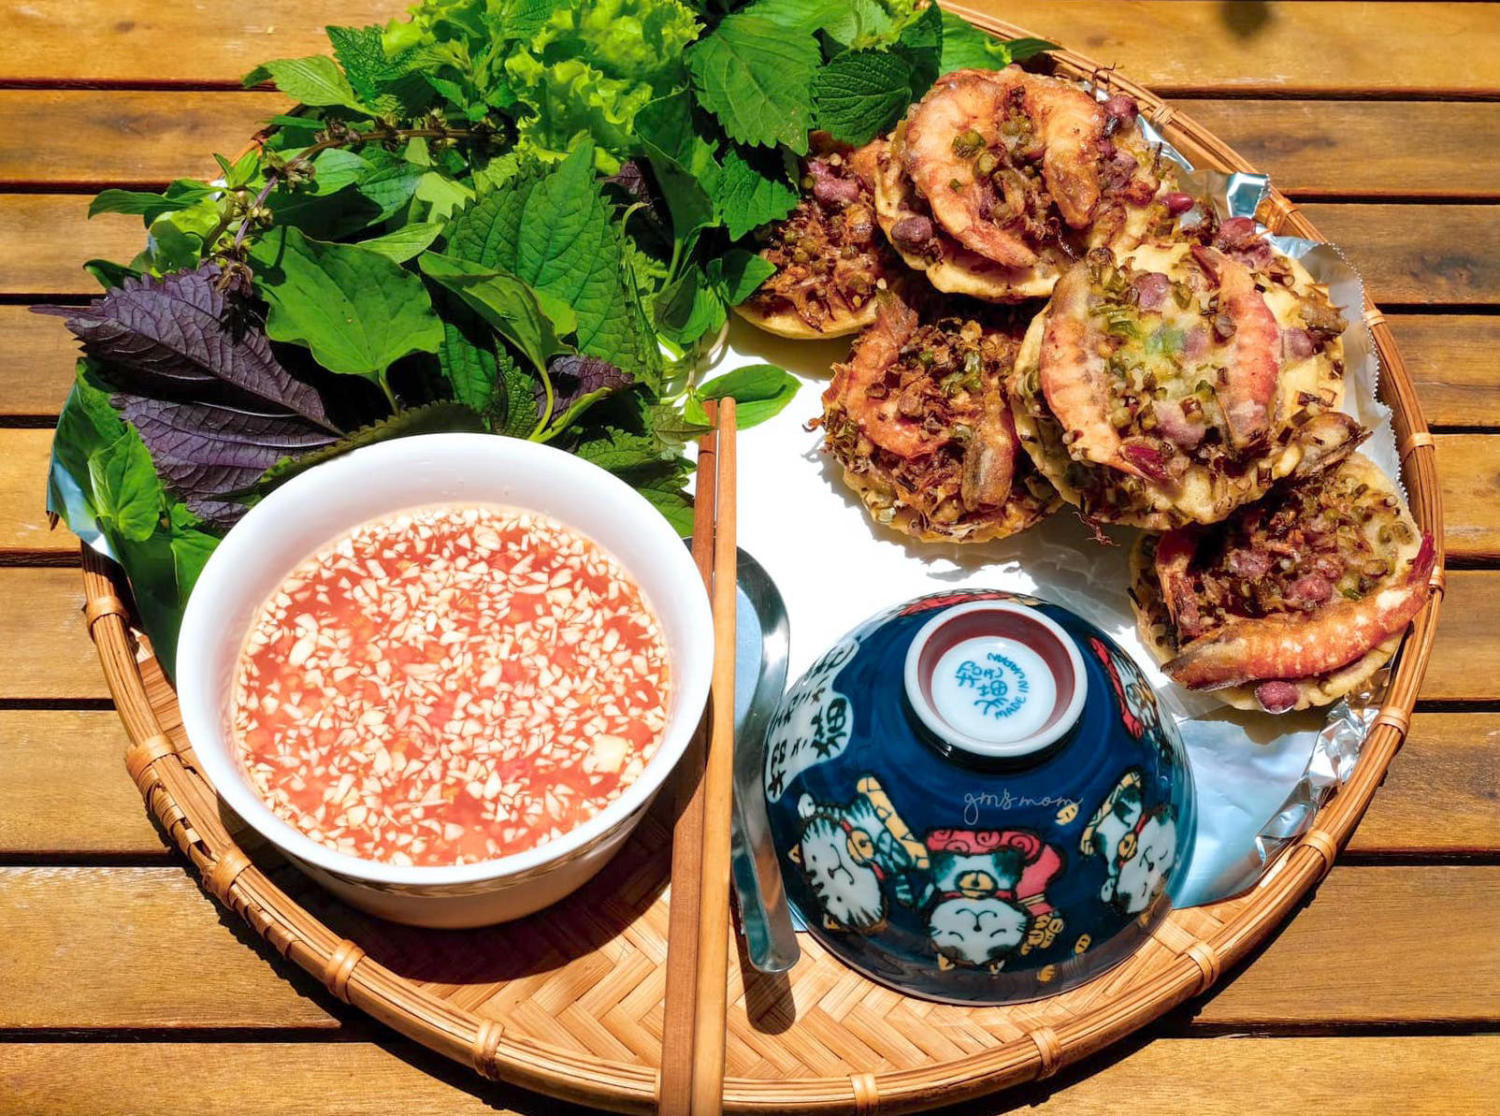 Bánh vá là một trong những đặc sản Tiền Giang nổi tiếng với hương vị độc lạ, thơm ngon